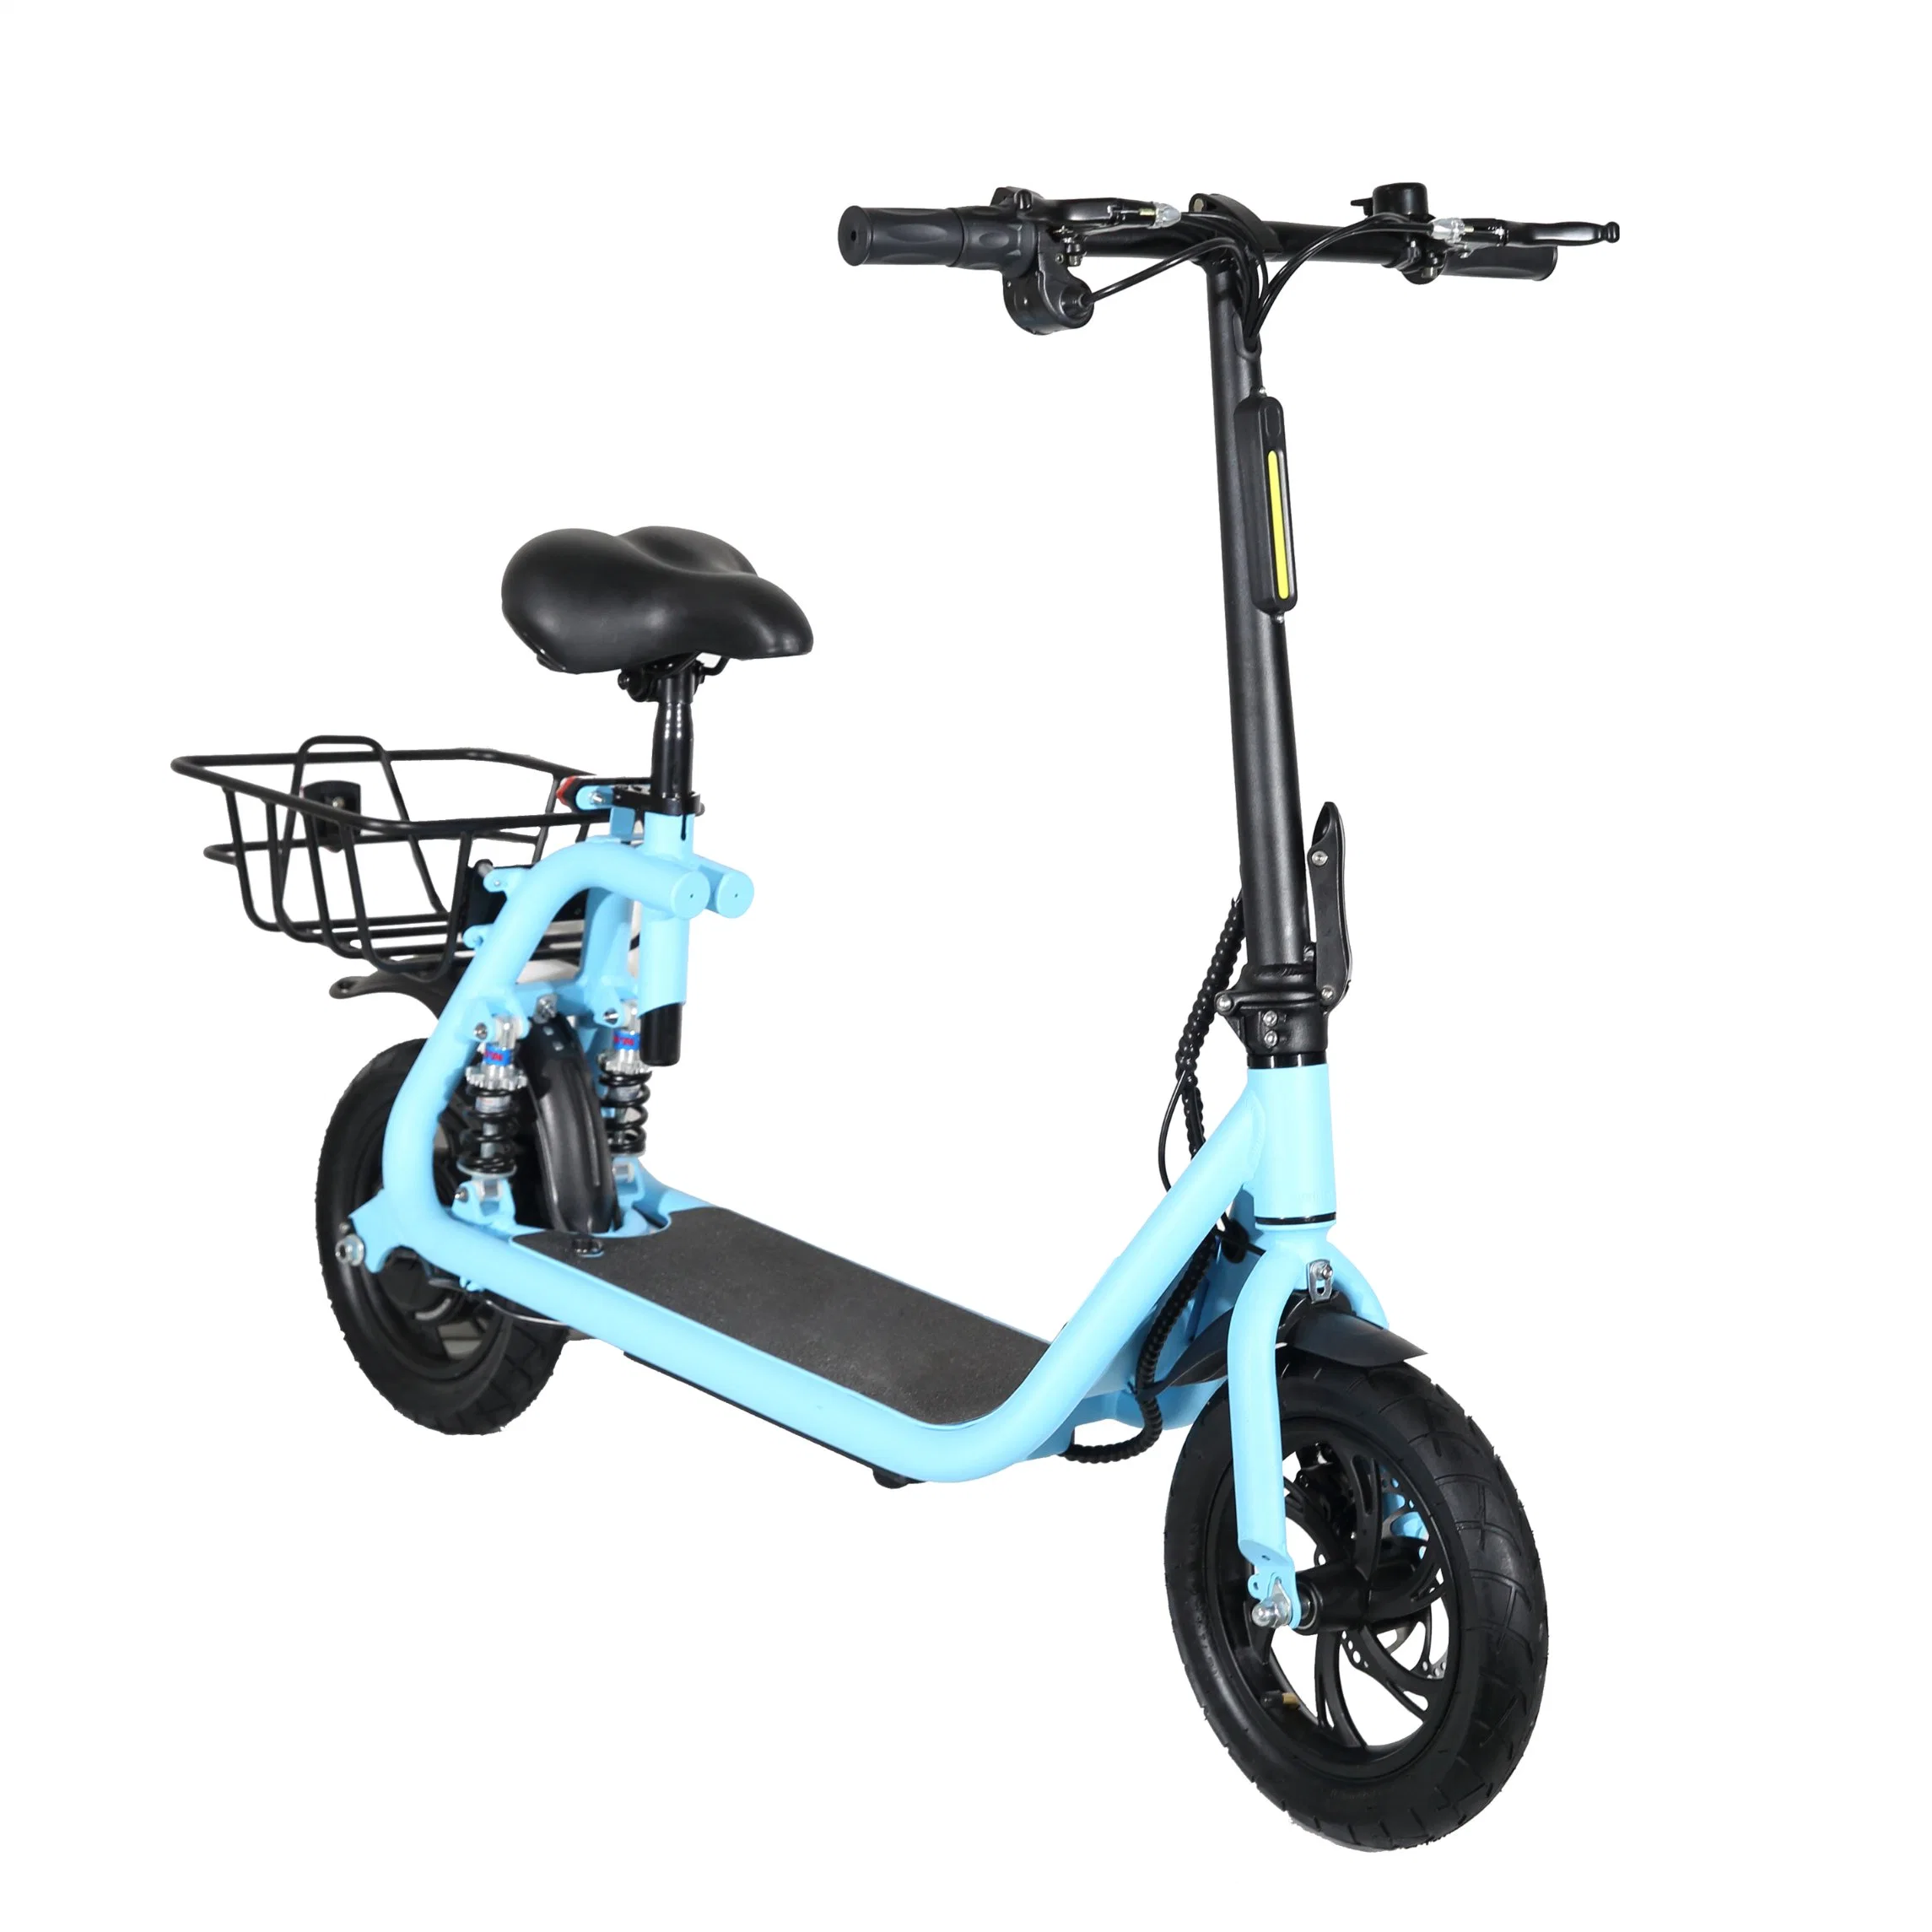 2022 منتج جديد دراجة دراجة كهربائية الدهون الدراجة بيتش كروزييه /دراجة كهربائية بقدرة 48 فولت على الطريق دراجة كهربائية بقدرة 36V500W